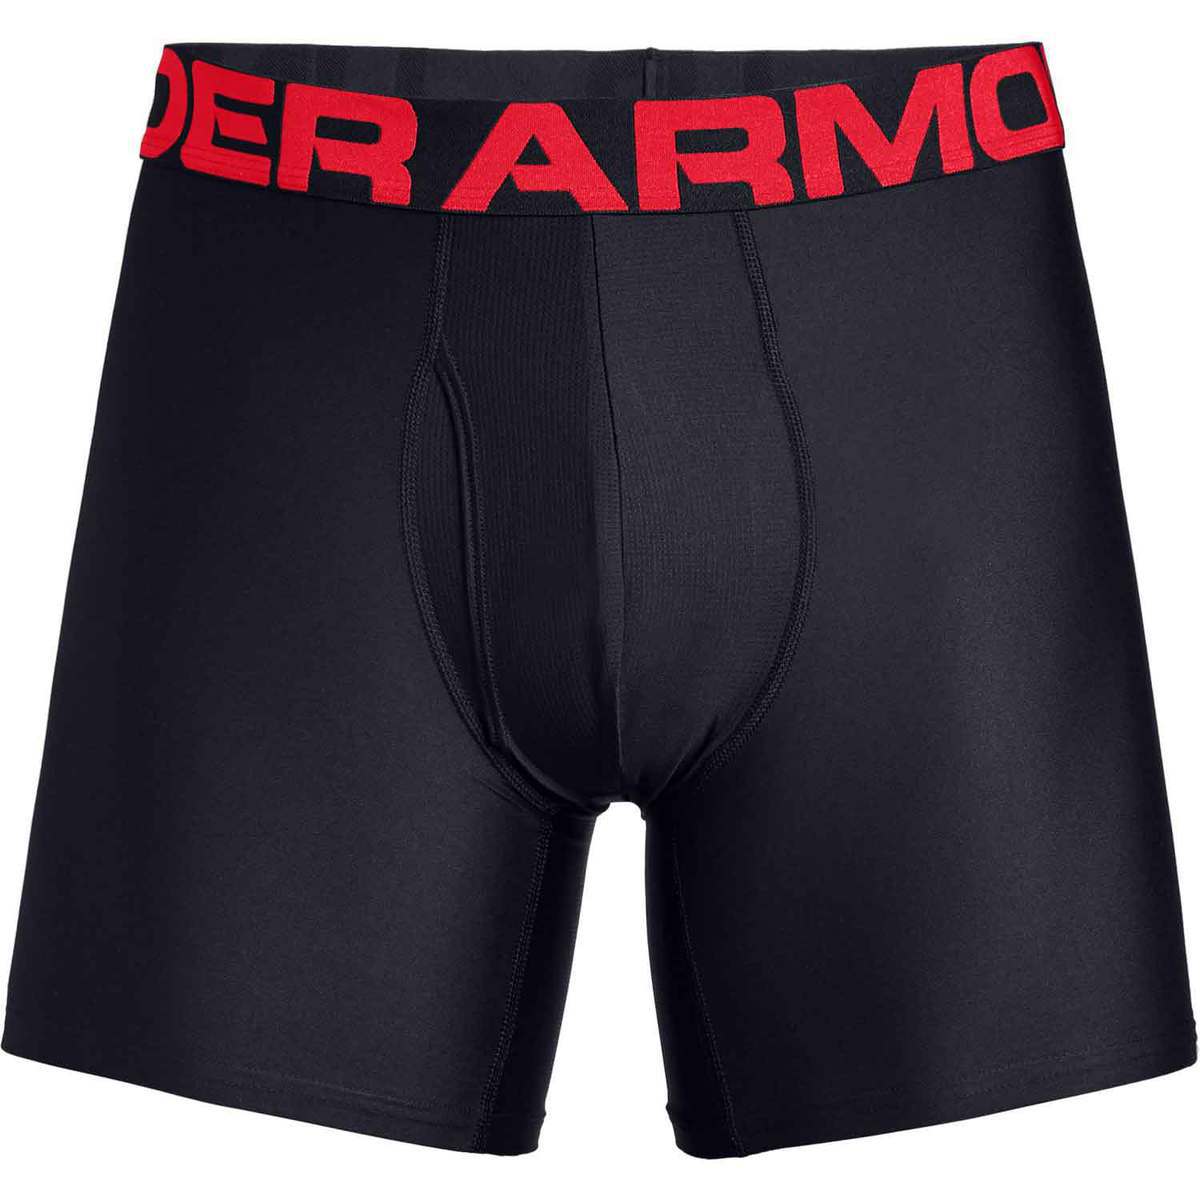 Under Armour Boxerjock Underwear | Sportsman's Warehouse